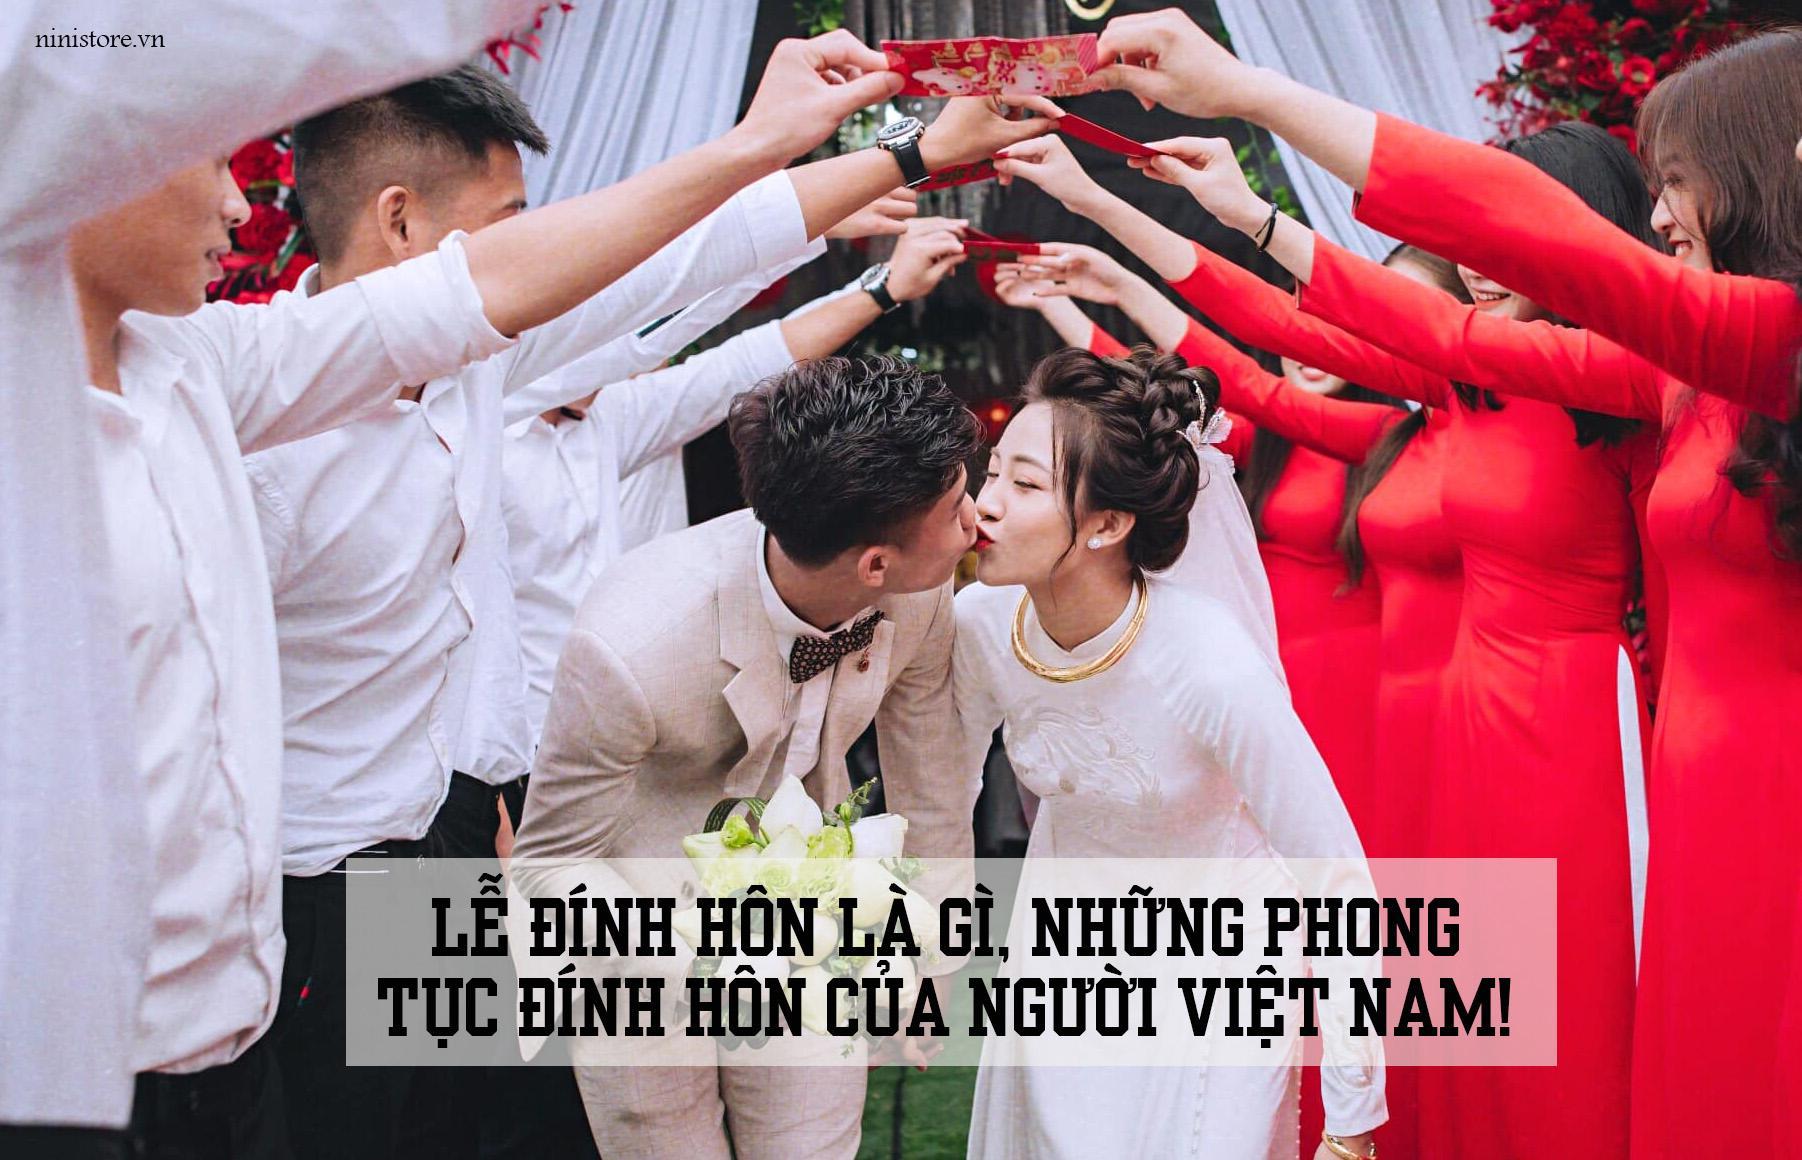 Lễ đính hôn là gì, những phong tục đính hôn của người Việt nam!